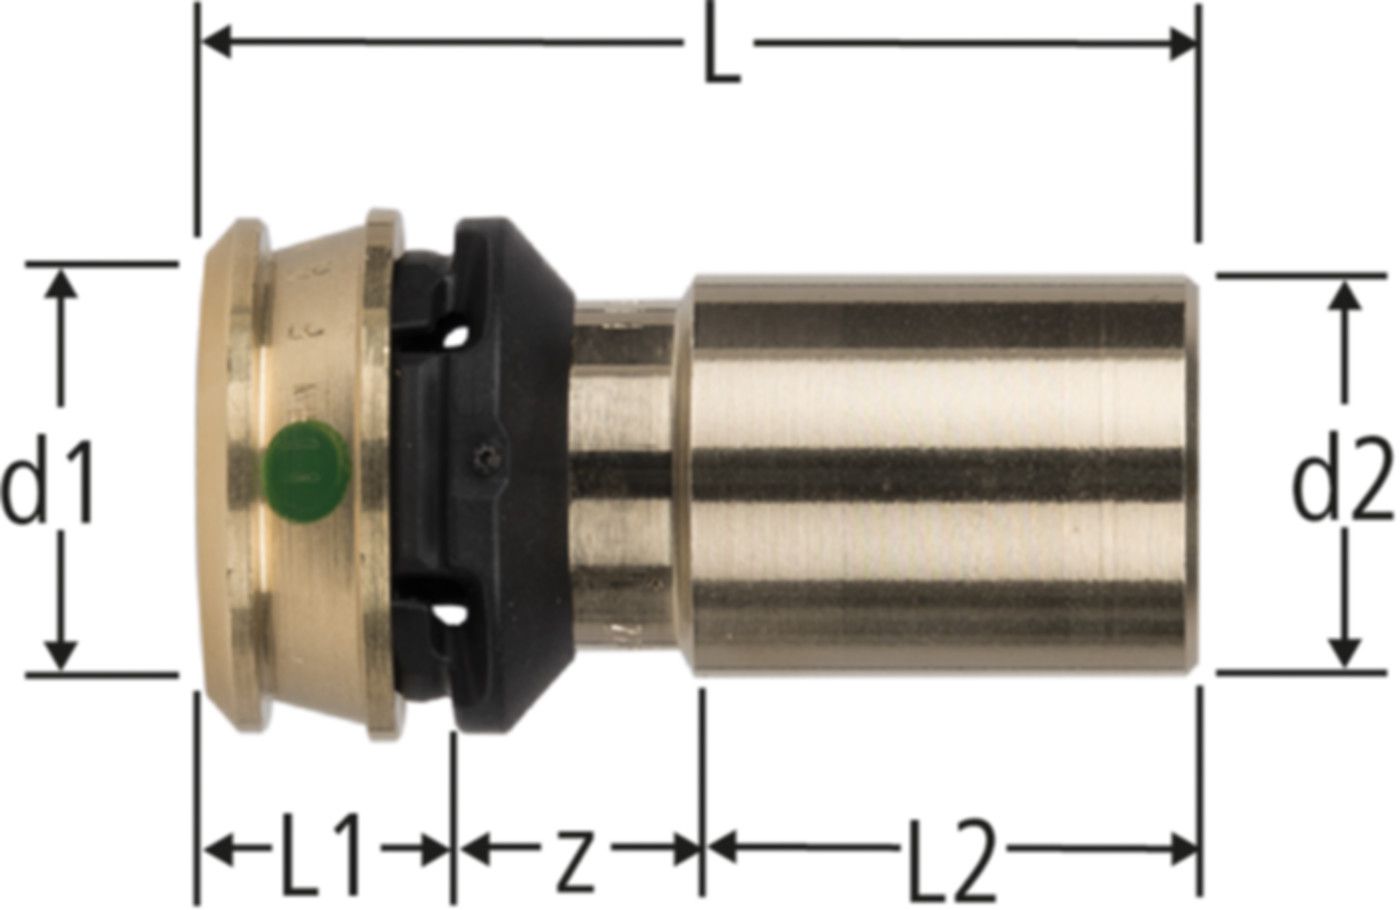 Optipress-Übergang 18 x 20mm 84234.23 mit Einsteckende - Nussbaum Optiflex-Flowpress Formstücke